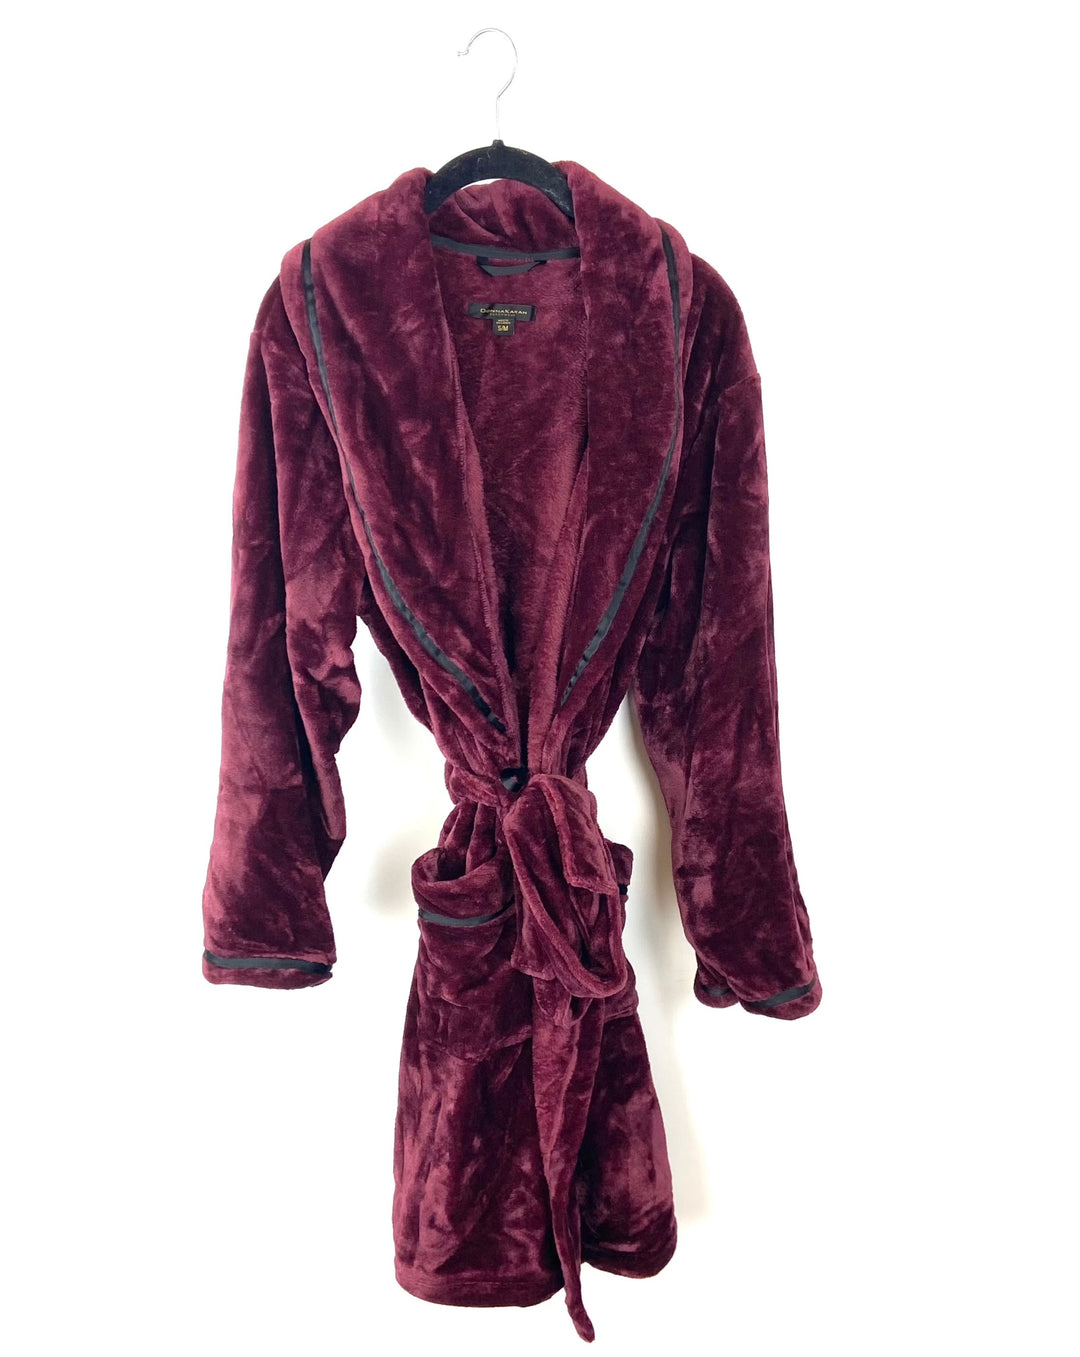 Dark Red Fleece Robe - Small/Medium